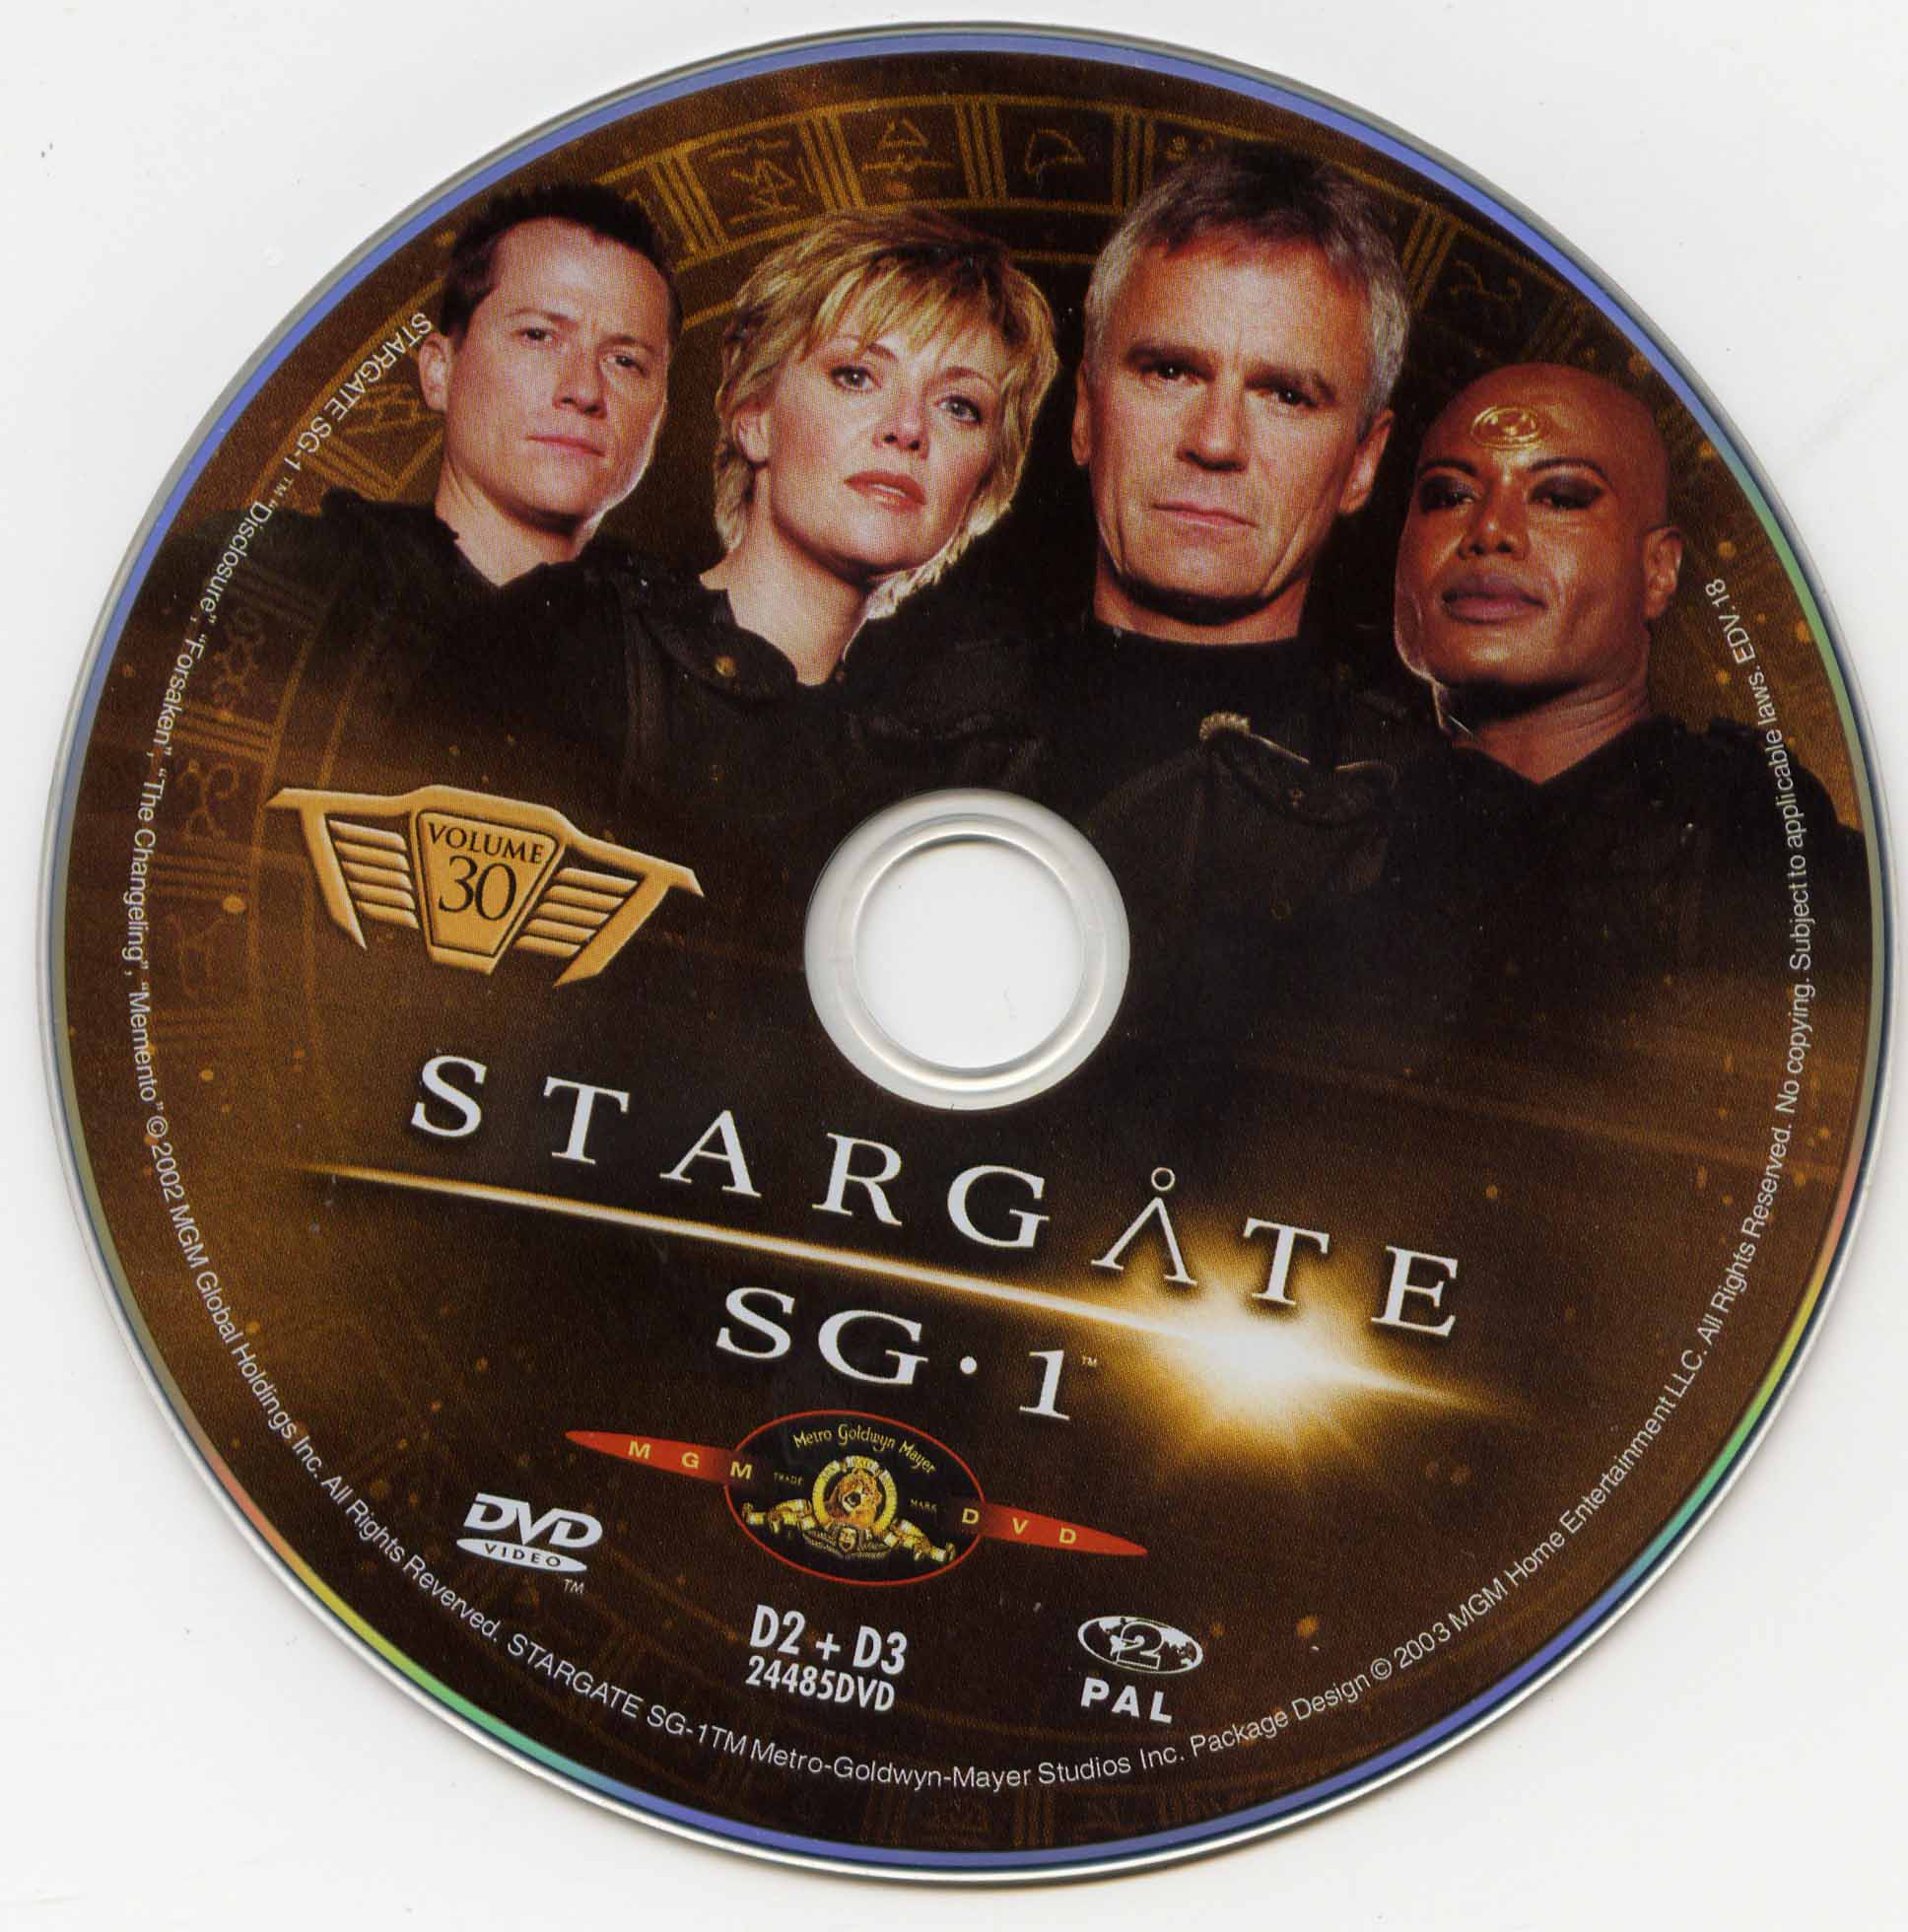 Stargate SG1 vol 30